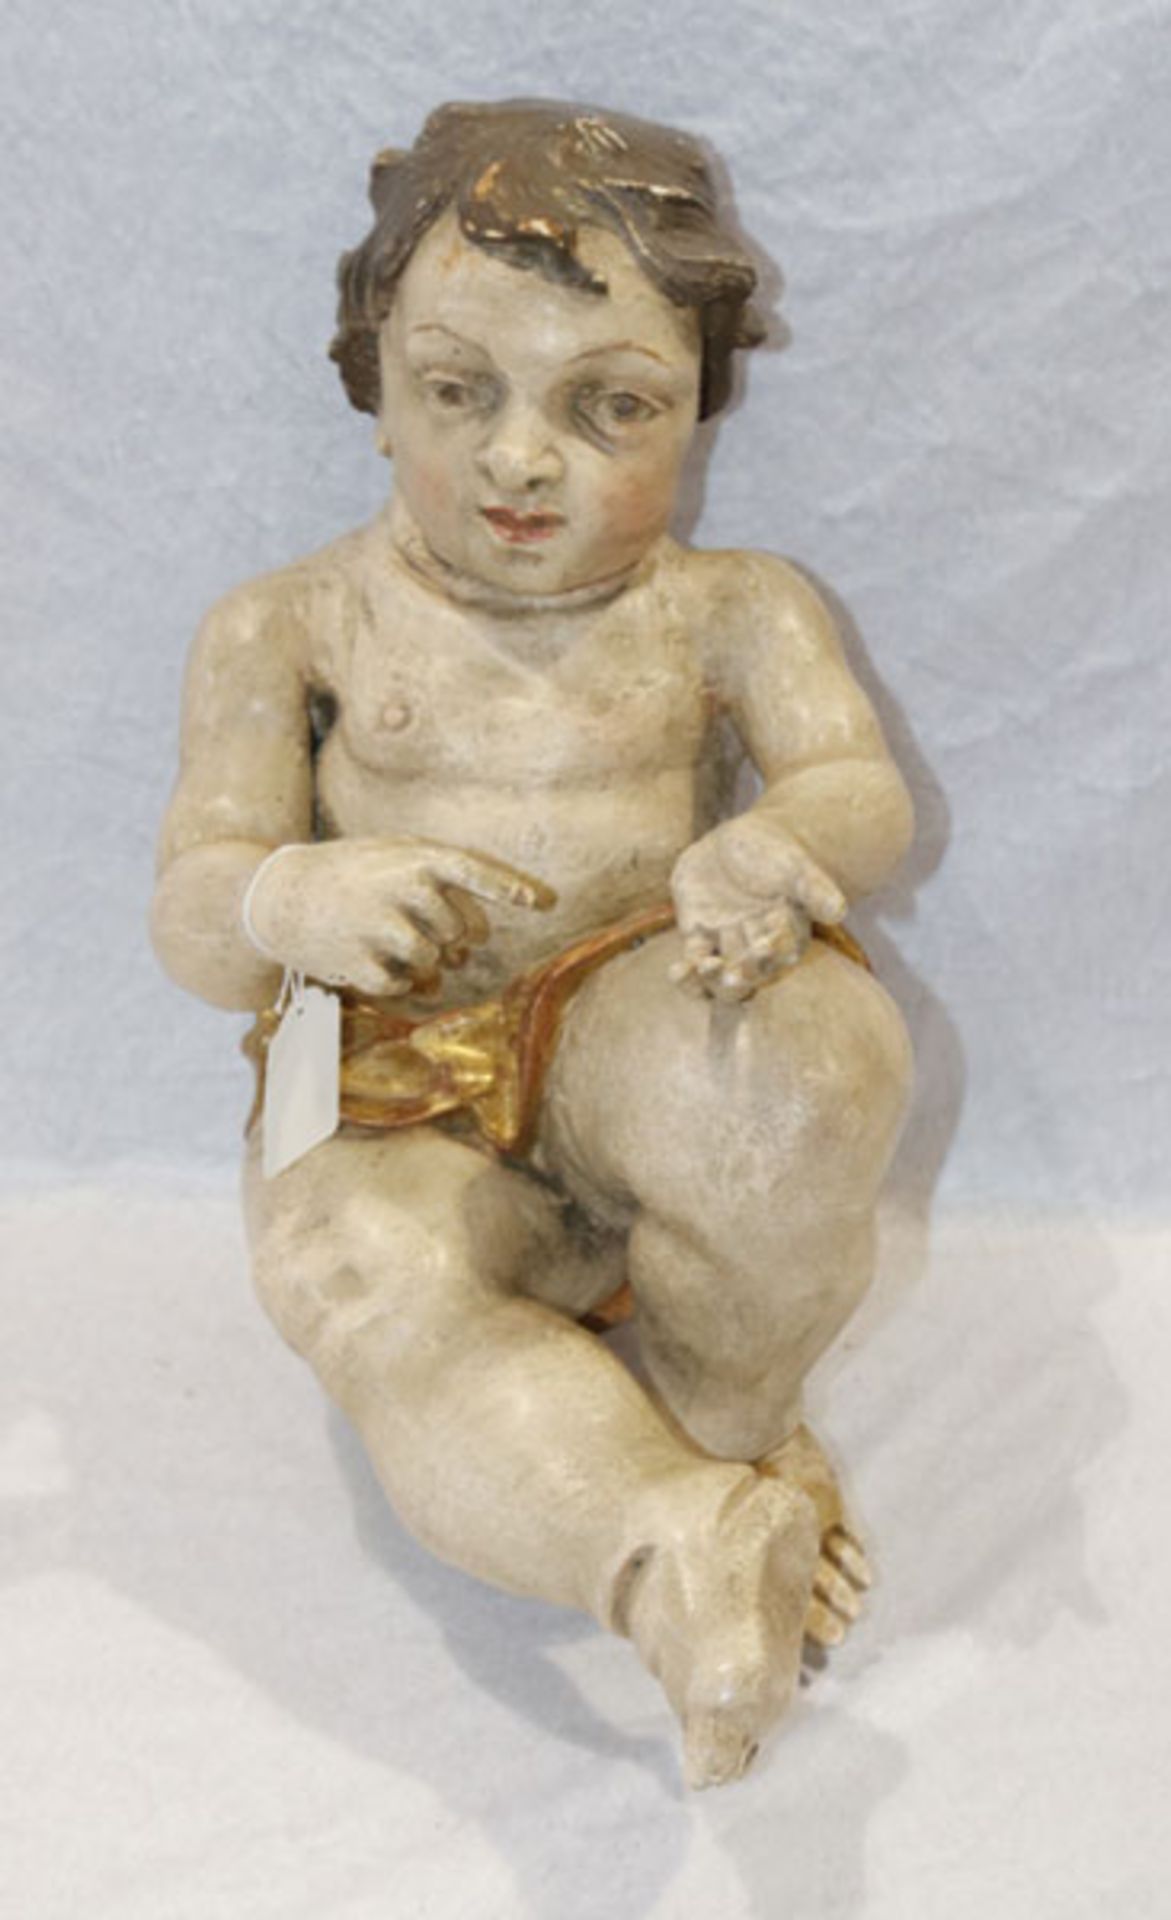 Holz Figurenskulptur 'Jesuskind', gefaßt, 19. Jahrhundert, teils bestossen und Fassung leicht